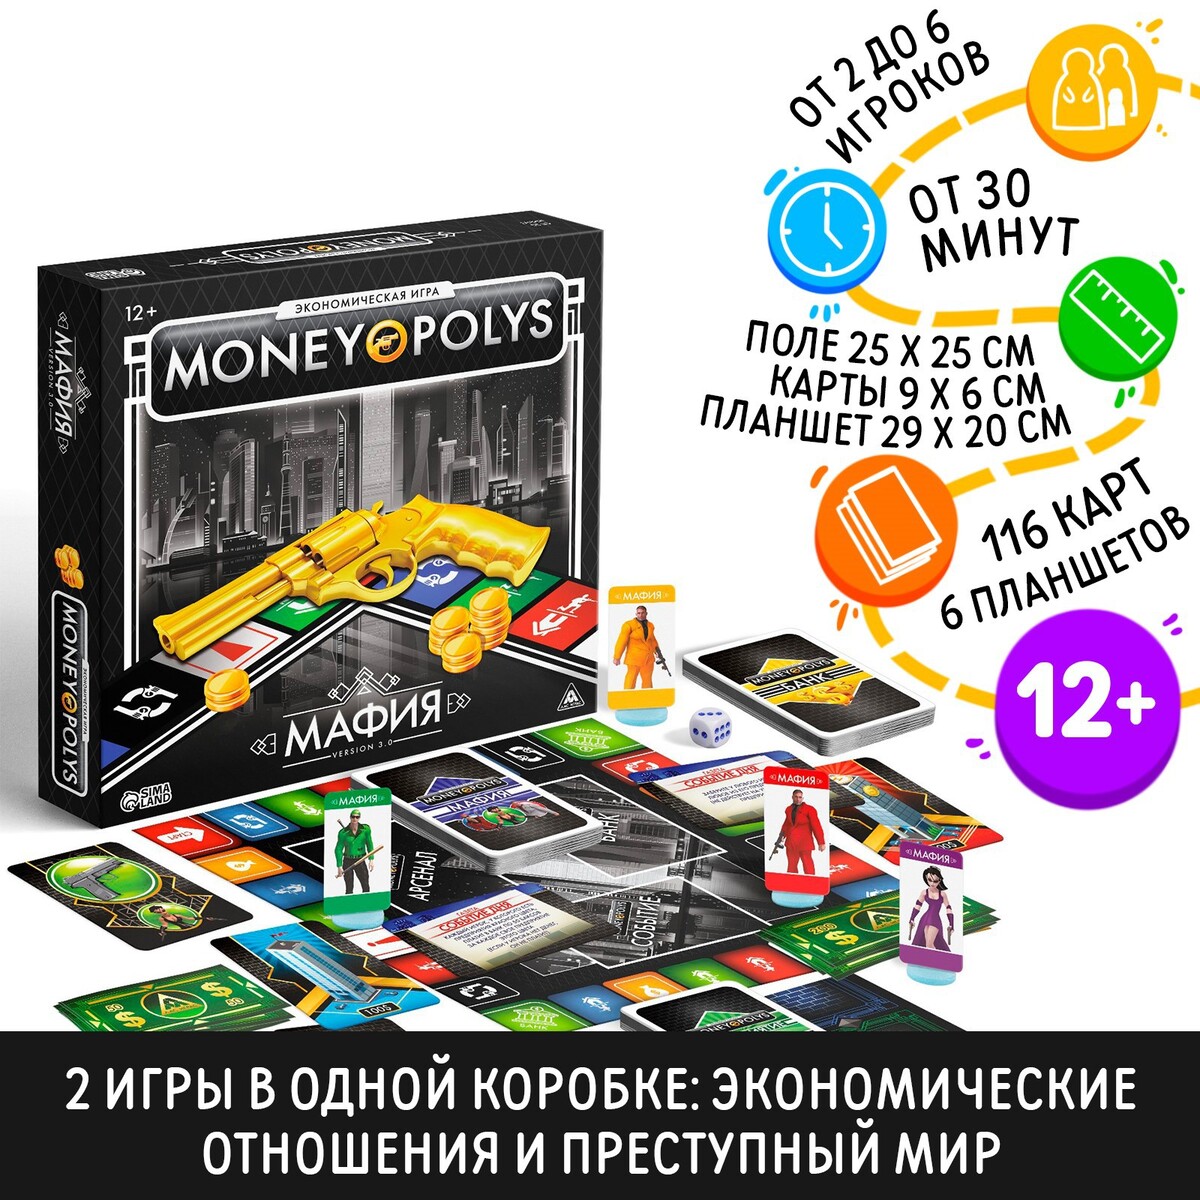 Настольная экономическая игра экономическая игра лас играс money polys бизнес мания 8 7585700